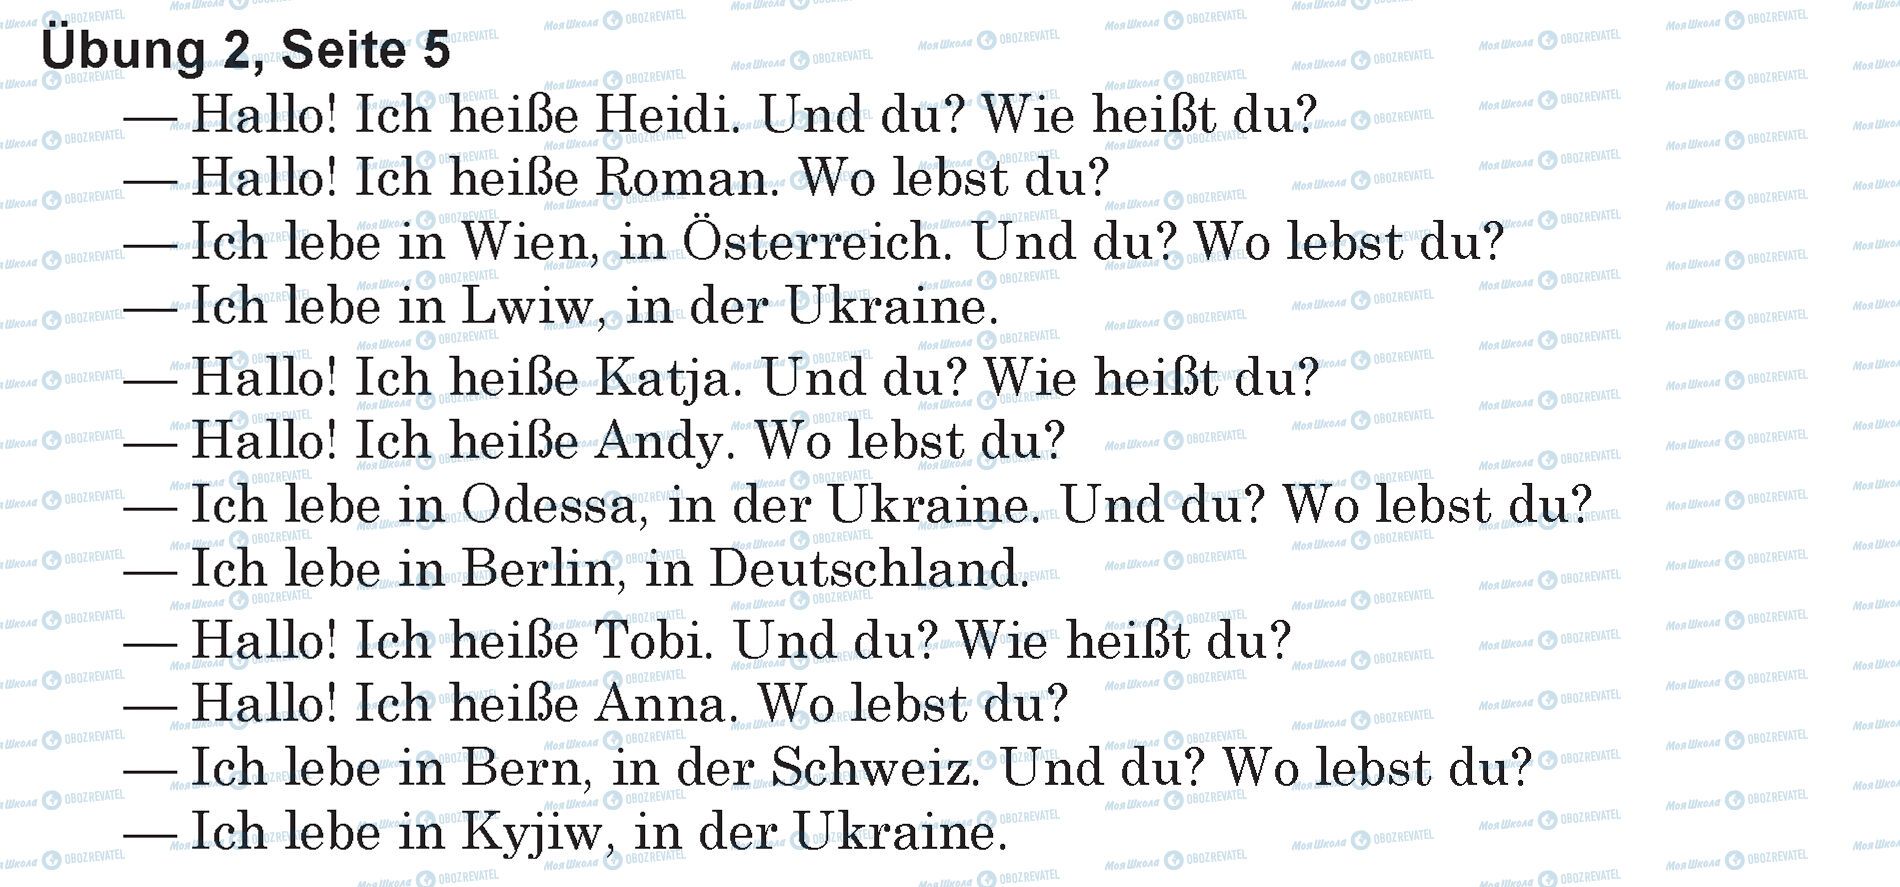 ГДЗ Немецкий язык 5 класс страница Ubung 2, Seite 5